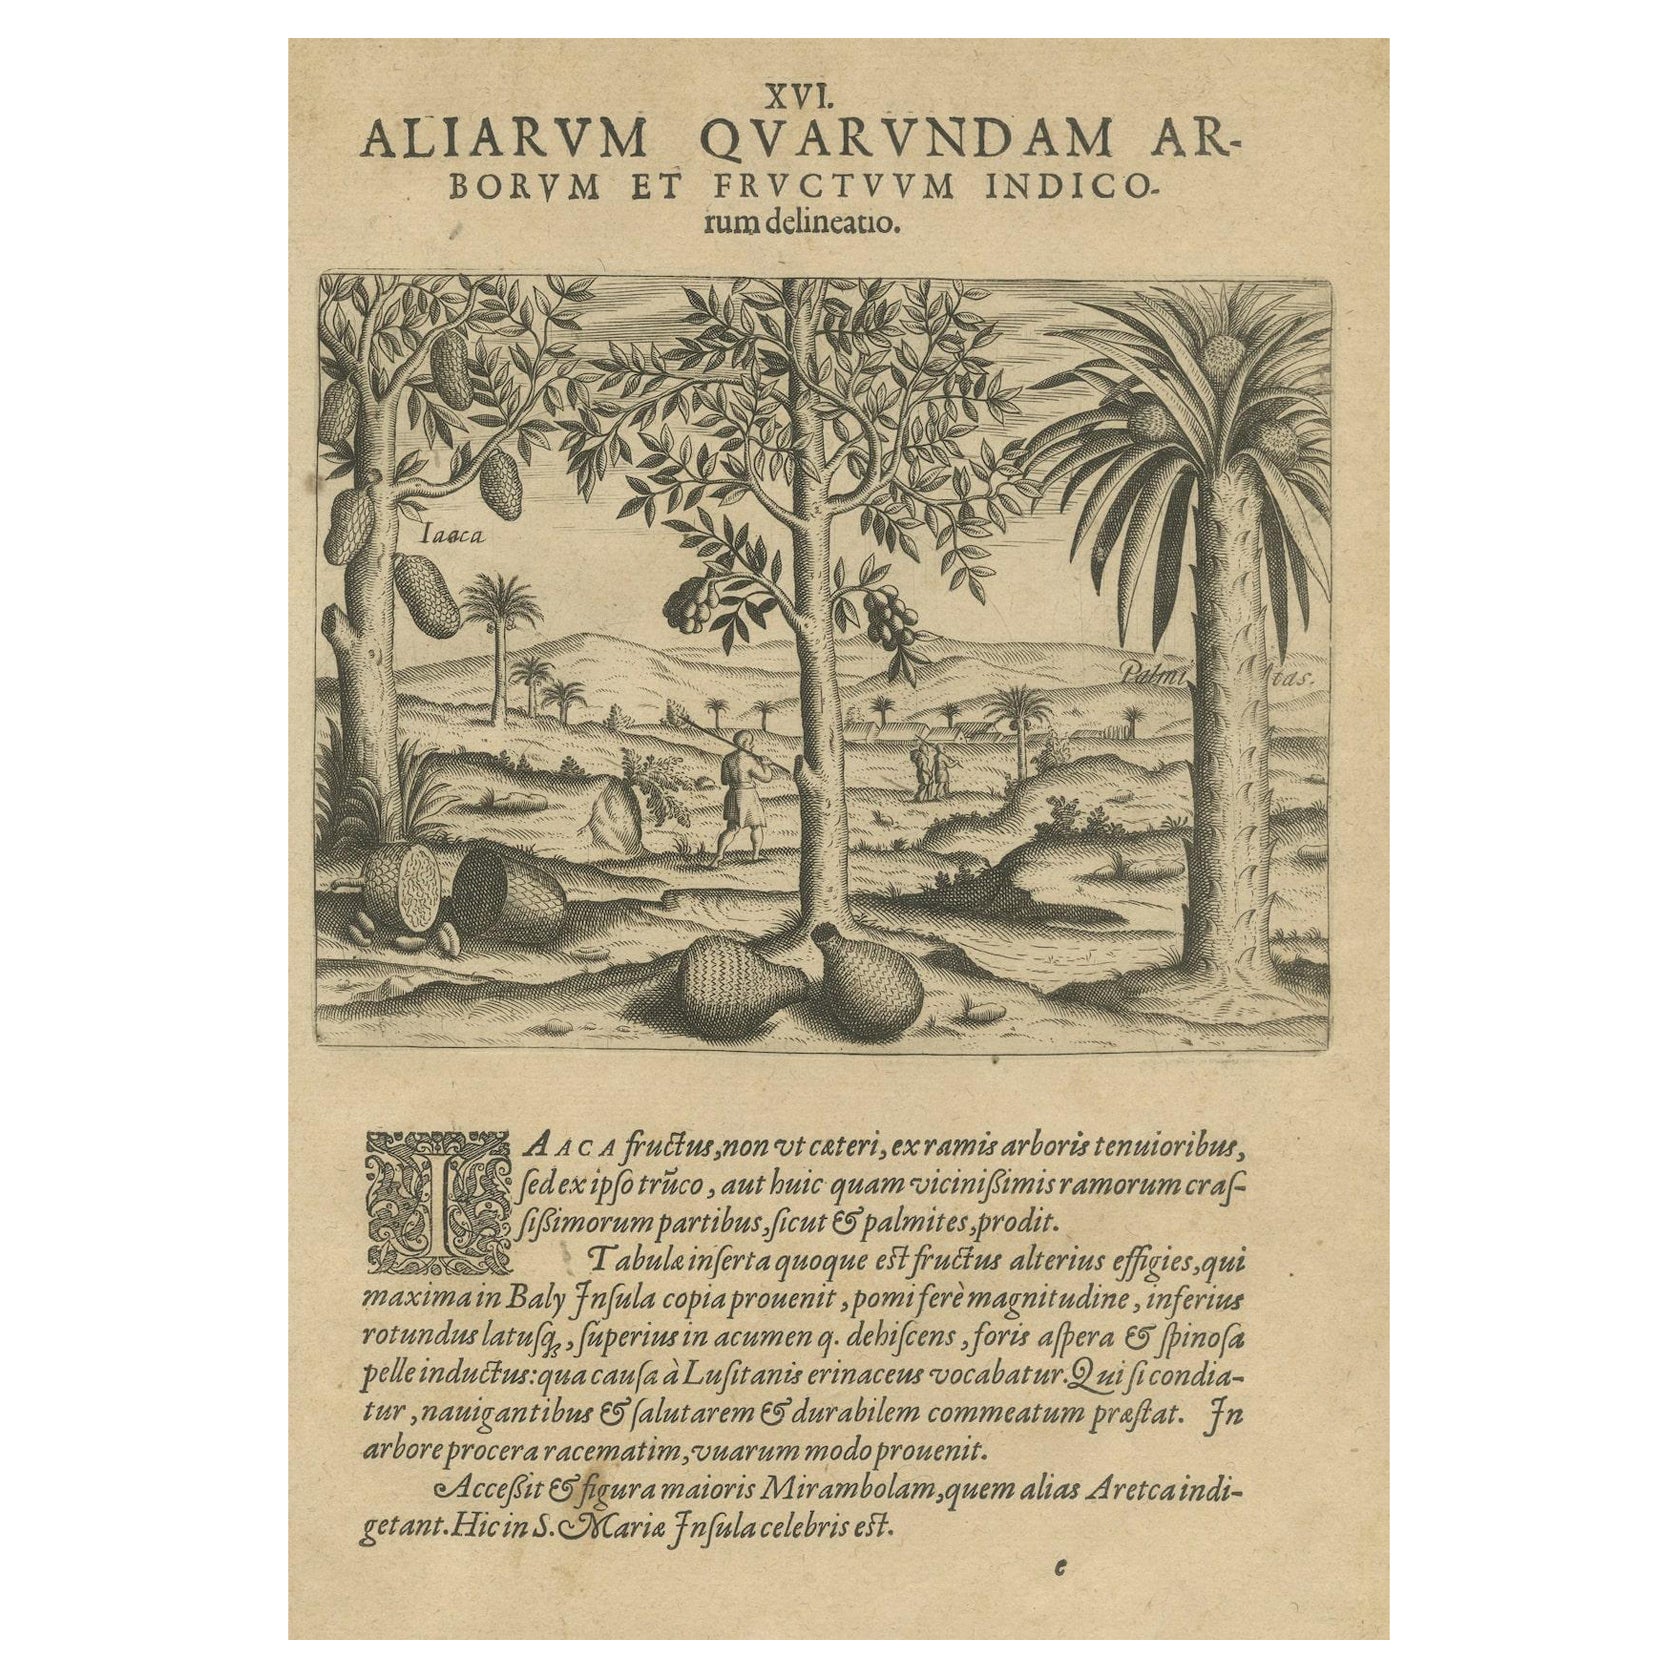 Abundance tropicale : le pamplemousse et les palmiers dans la gravure de De Bry 1601